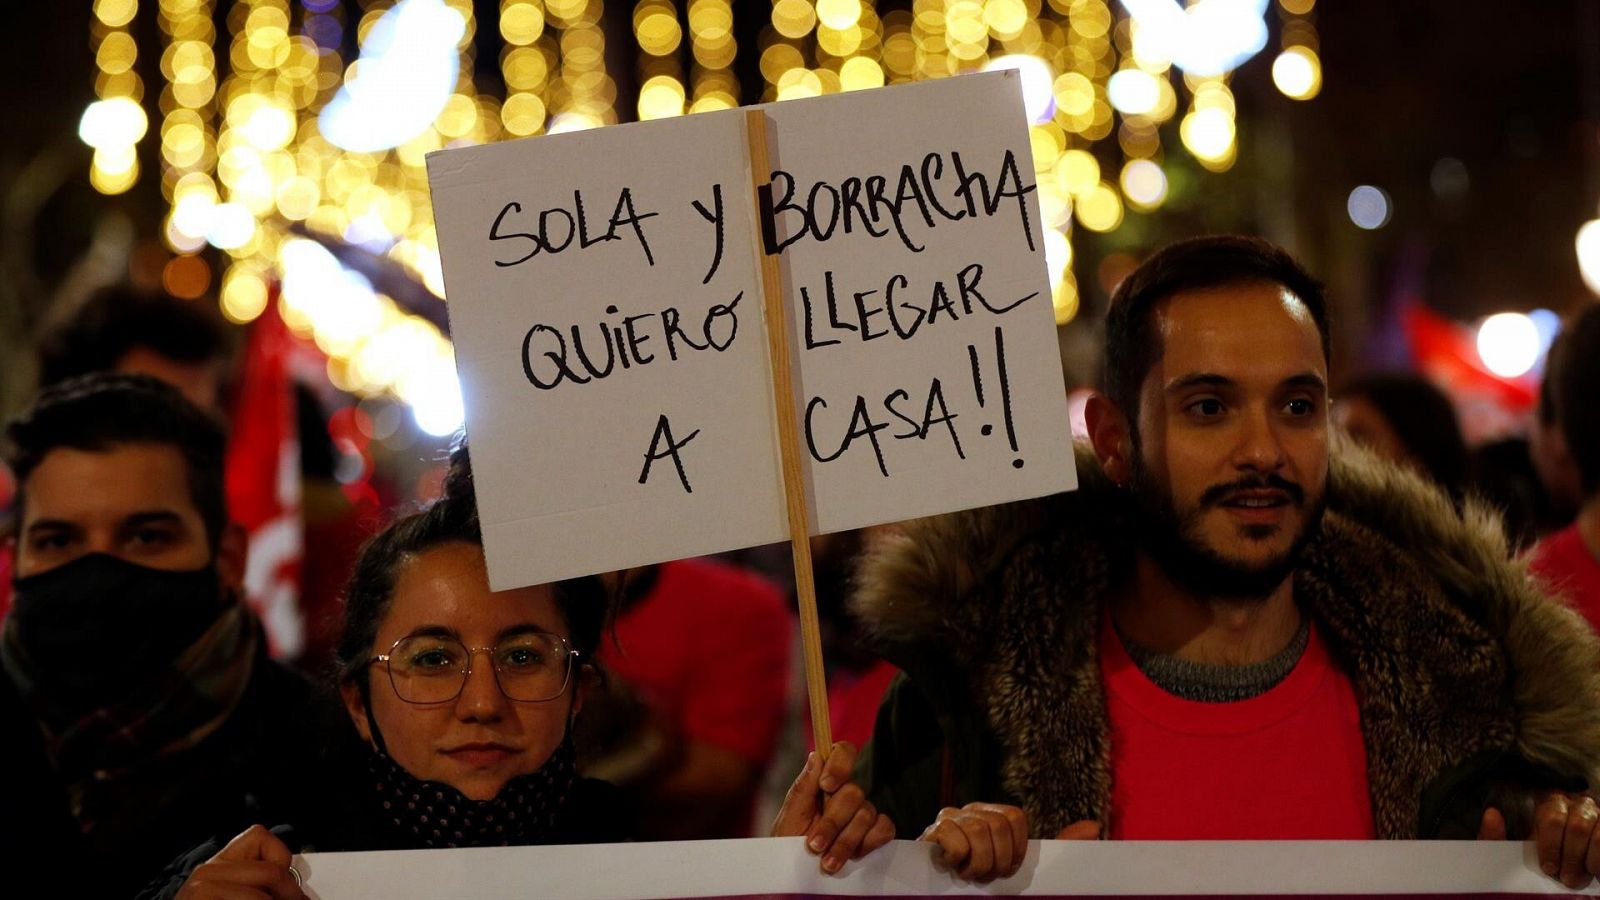 "Sola y borracha quiero llegar a casa", uno de los lemas feministas en España